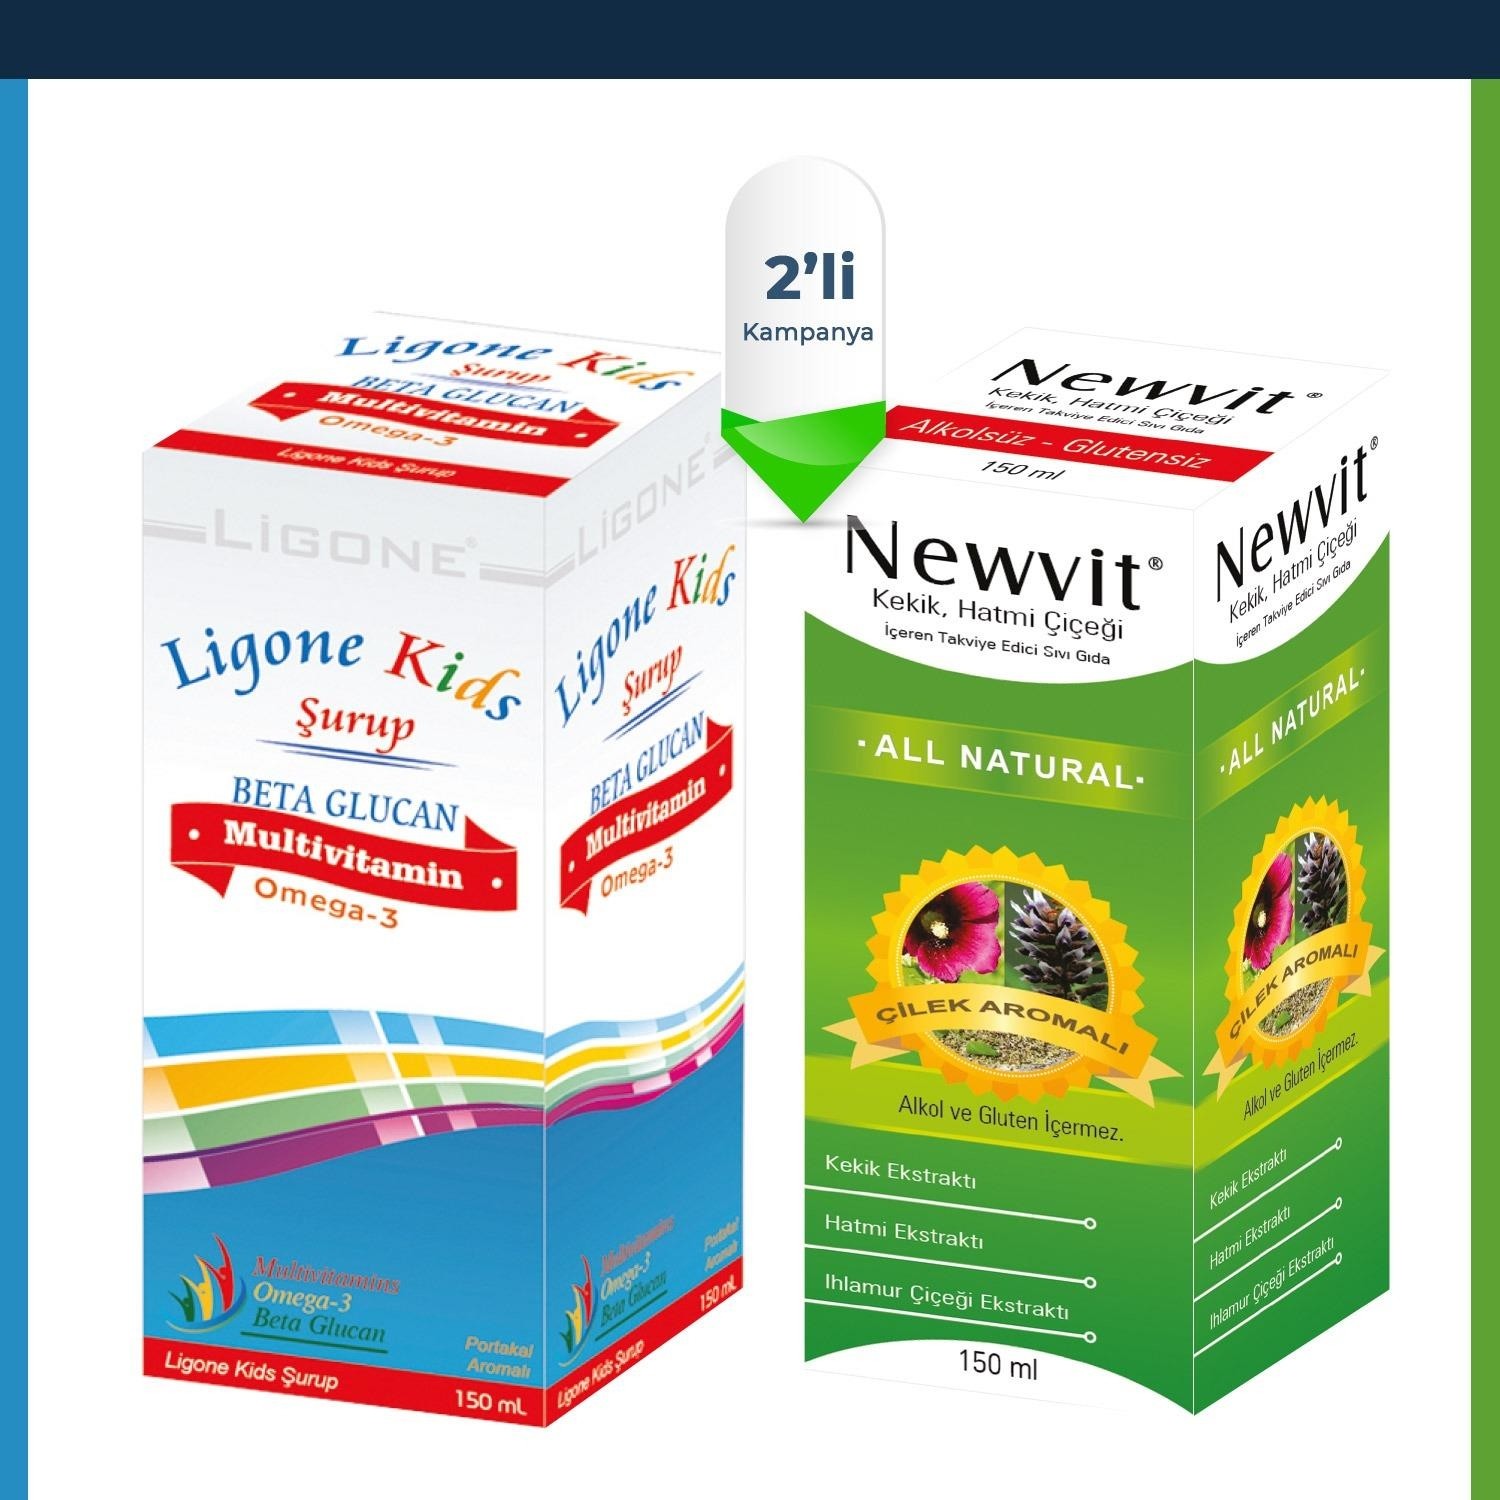 Мультивитаминный сироп Newdrog Ligone Kids 150 мл + Сироп с зефиром и тимьяном Newvit